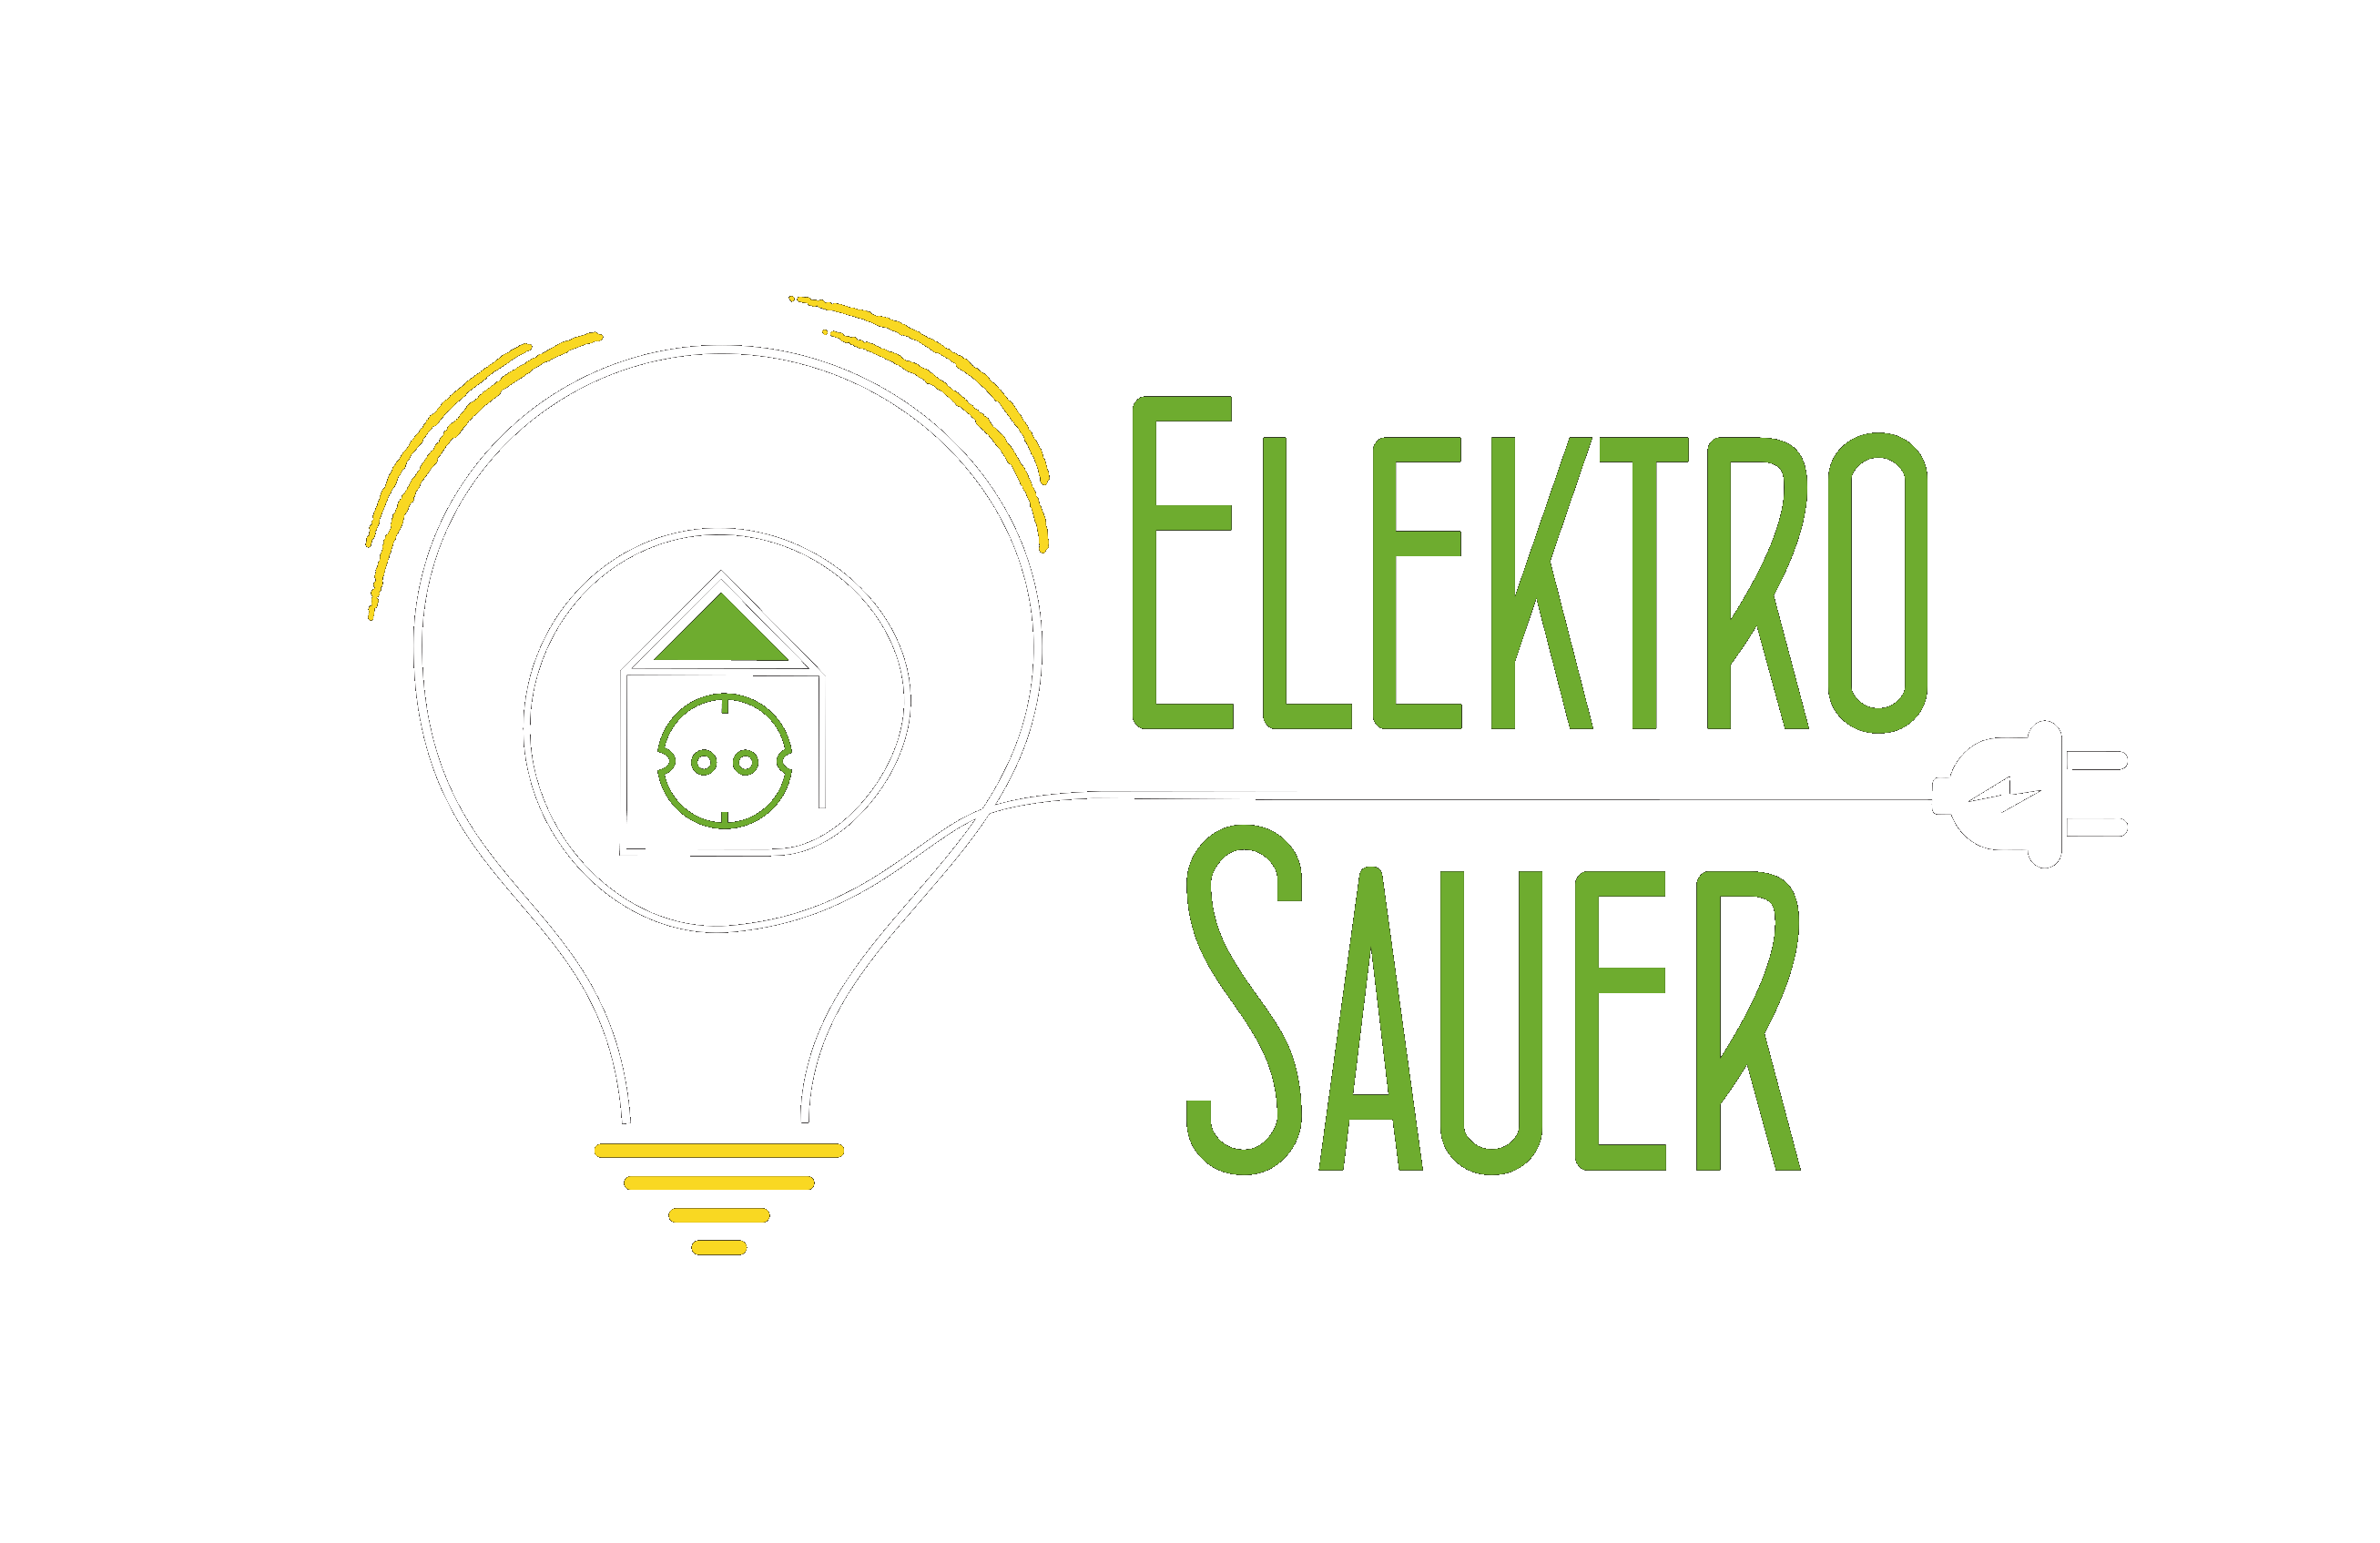 Elektro Sauer